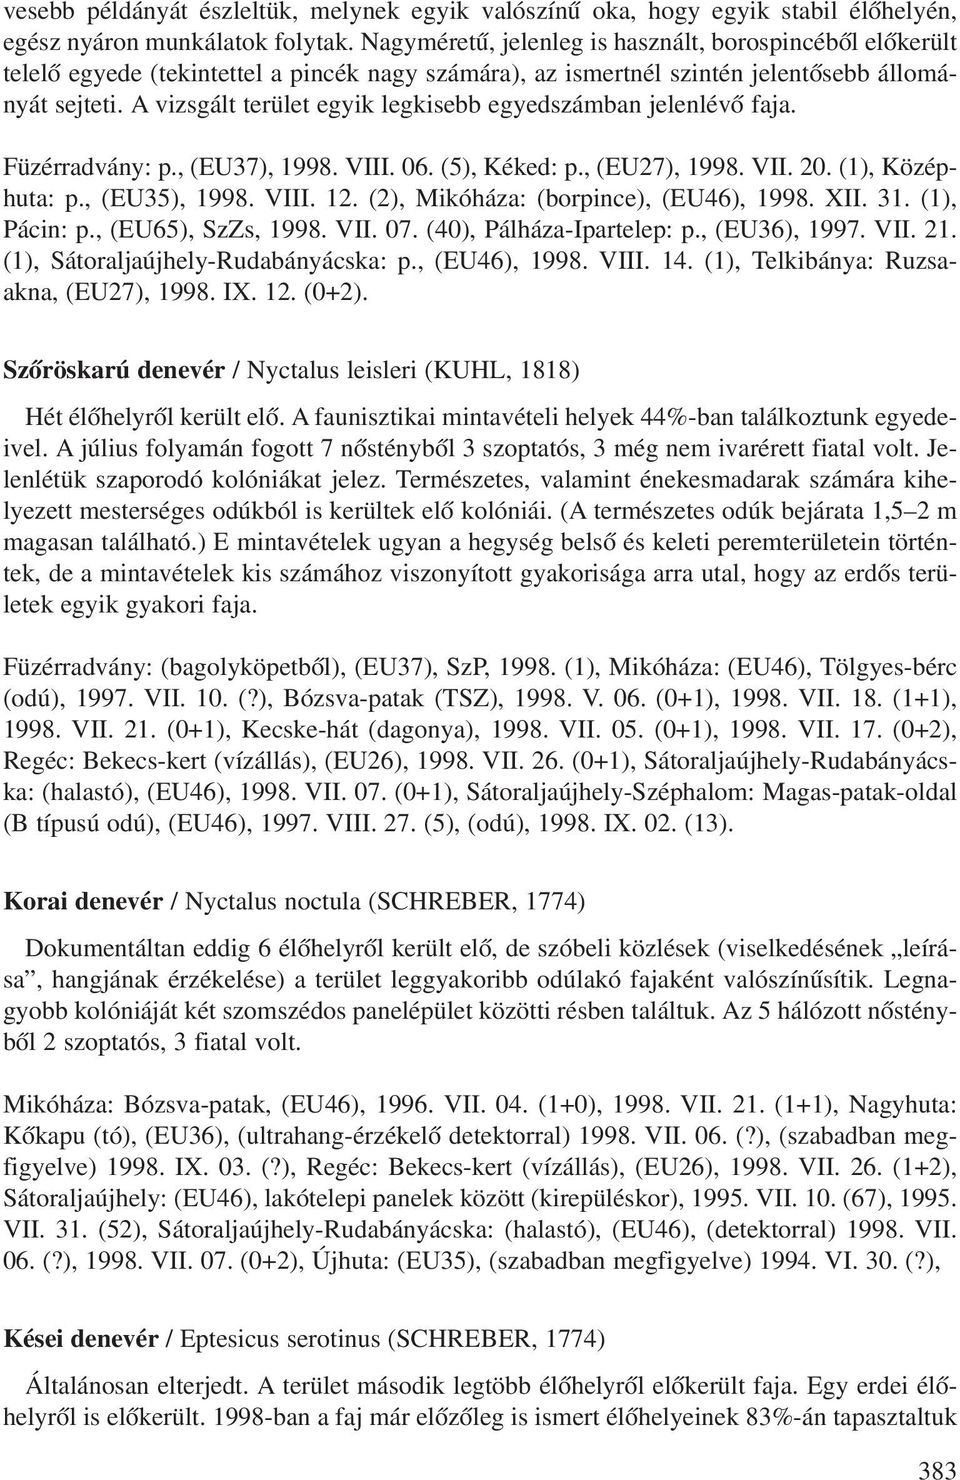 A vizsgált terület egyik legkisebb egyedszámban jelenlévô faja. Füzérradvány: p., (EU37), 1998. VIII. 06. (5), Kéked: p., (EU27), 1998. VII. 20. (1), Középhuta: p., (EU35), 1998. VIII. 12.